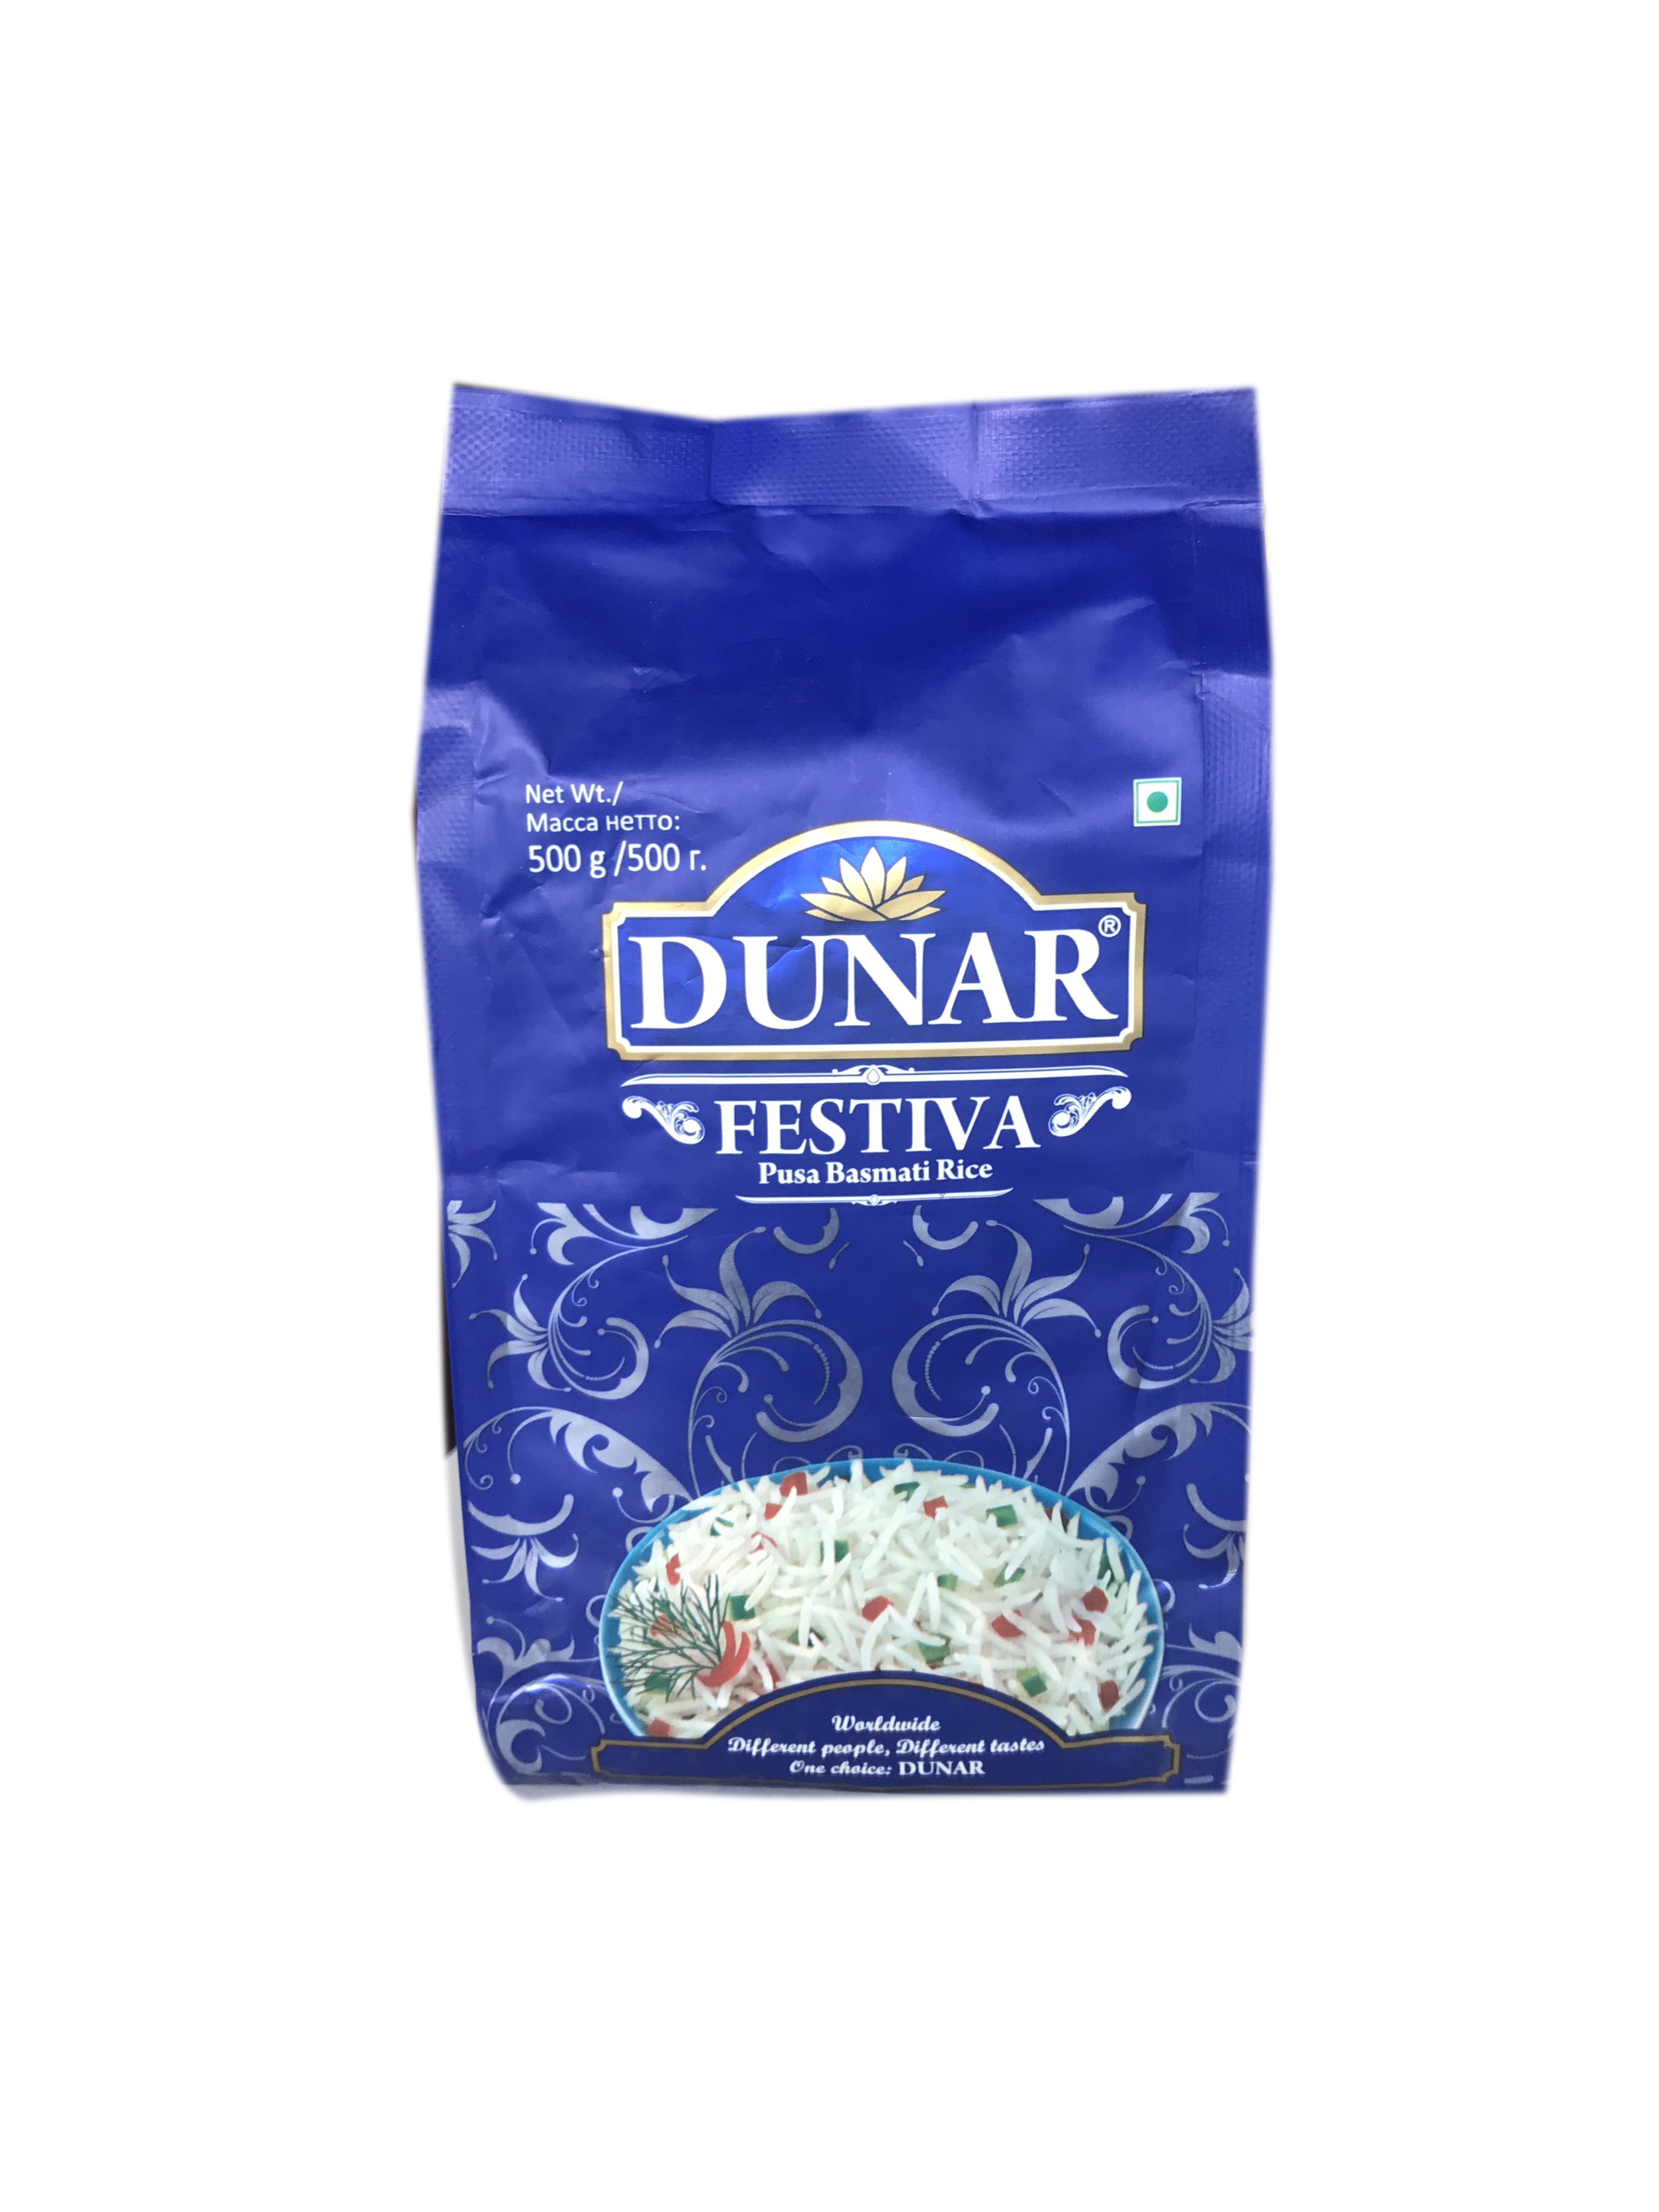 Dunar FESTIVA Pusa Basmati Rice (Дунар ФЕСТИВА длиннозёрный рис басмати, шлифованный), 500 г.